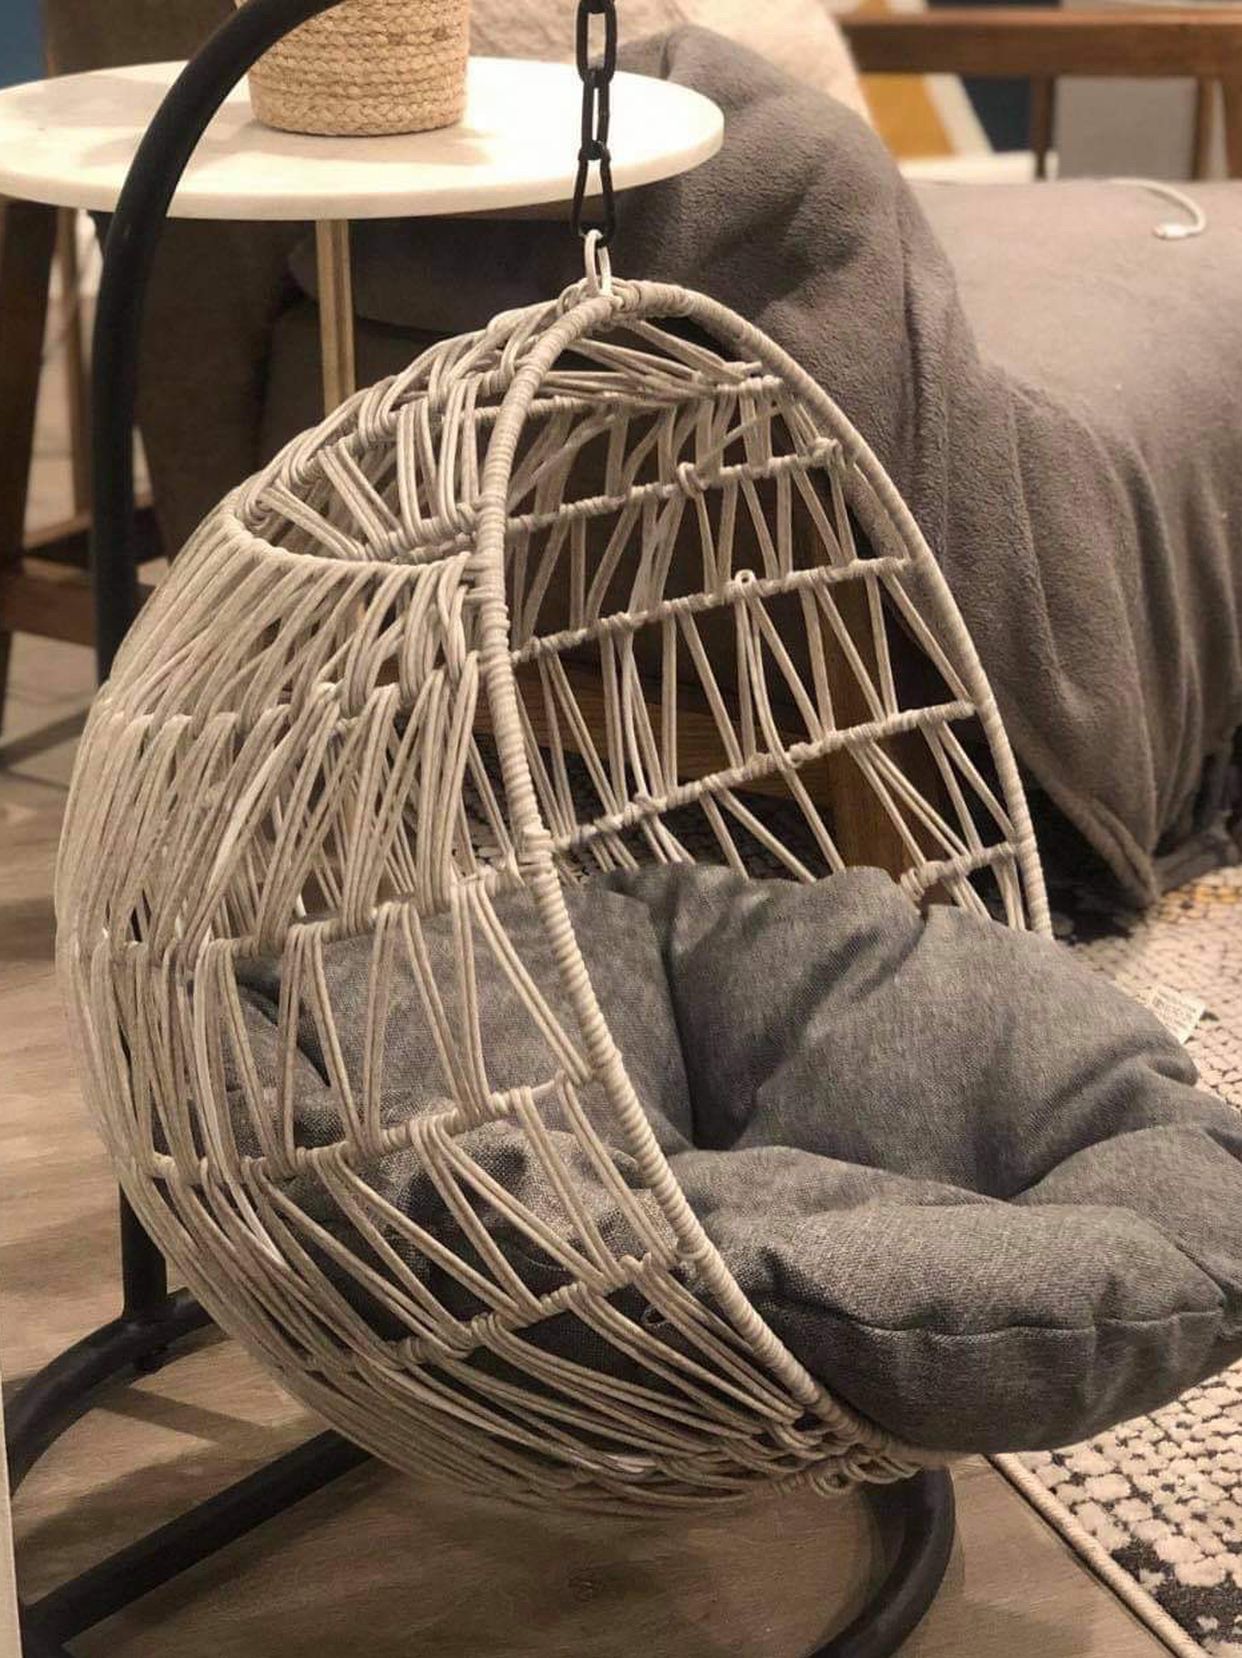 Wicker Rattan Hanging Hammock Pet Chair/Bed